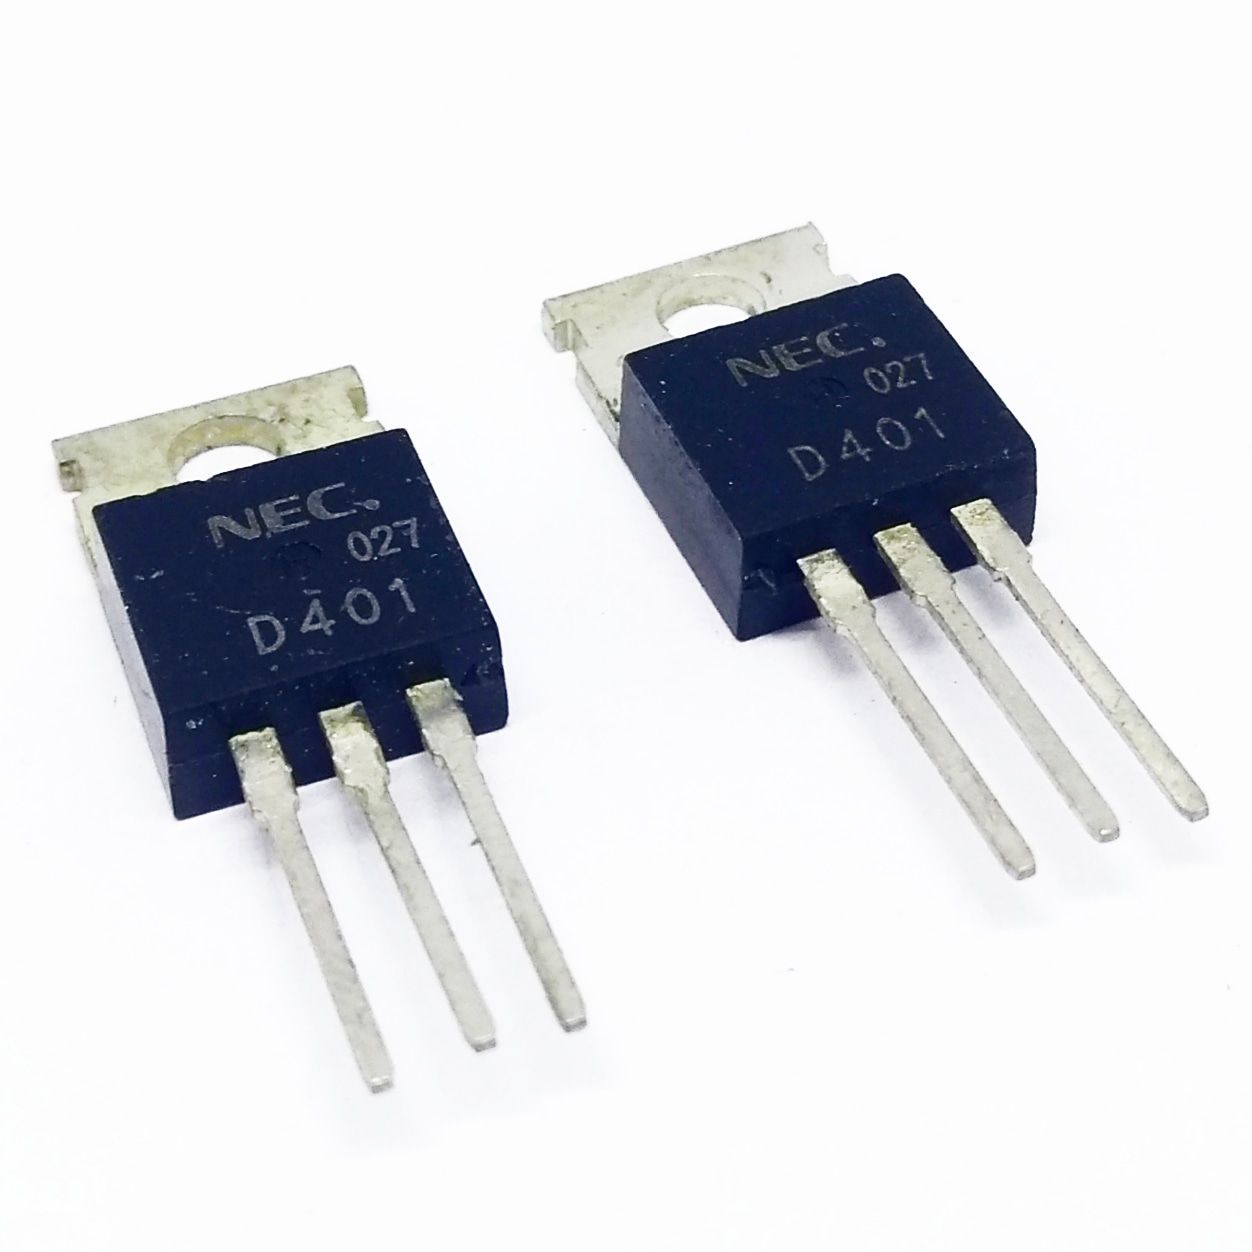 Kit 50 peças - Transistor 2SD401A TO-220 original - NEC